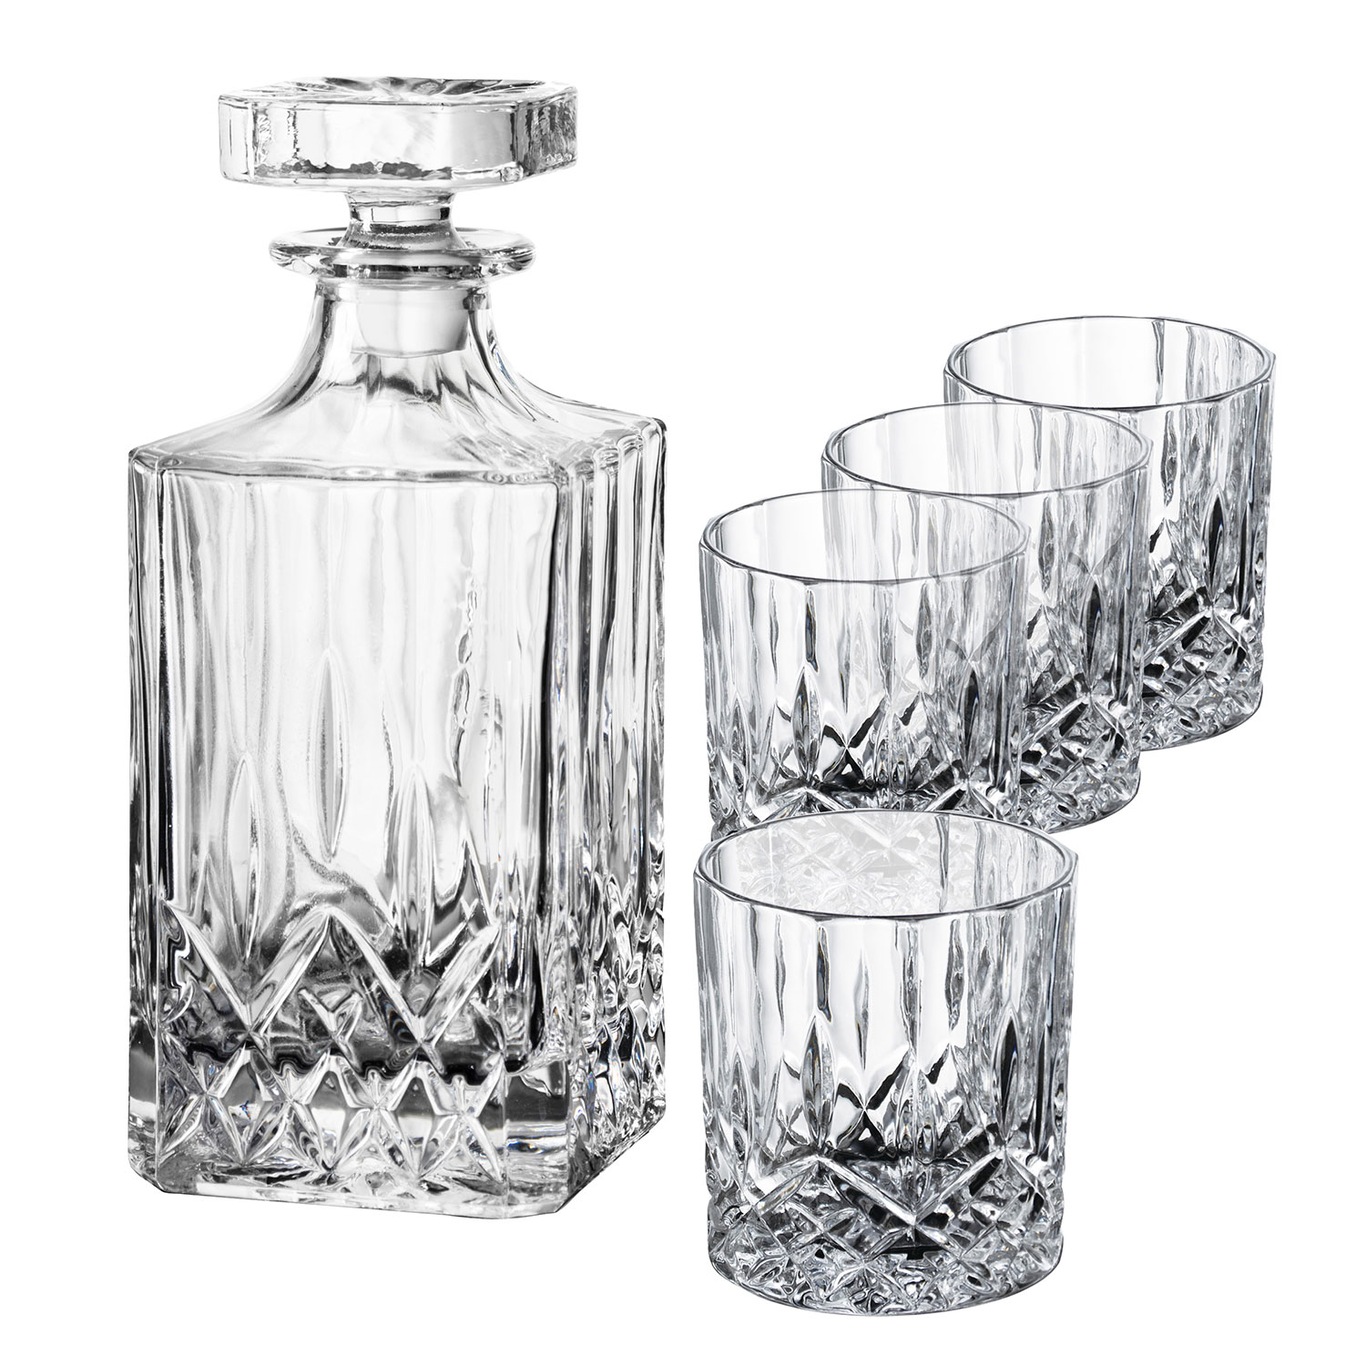 https://royaldesign.com/image/2/aida-harvey-carafe-and-glass-set-5-pcs-0?w=800&quality=80